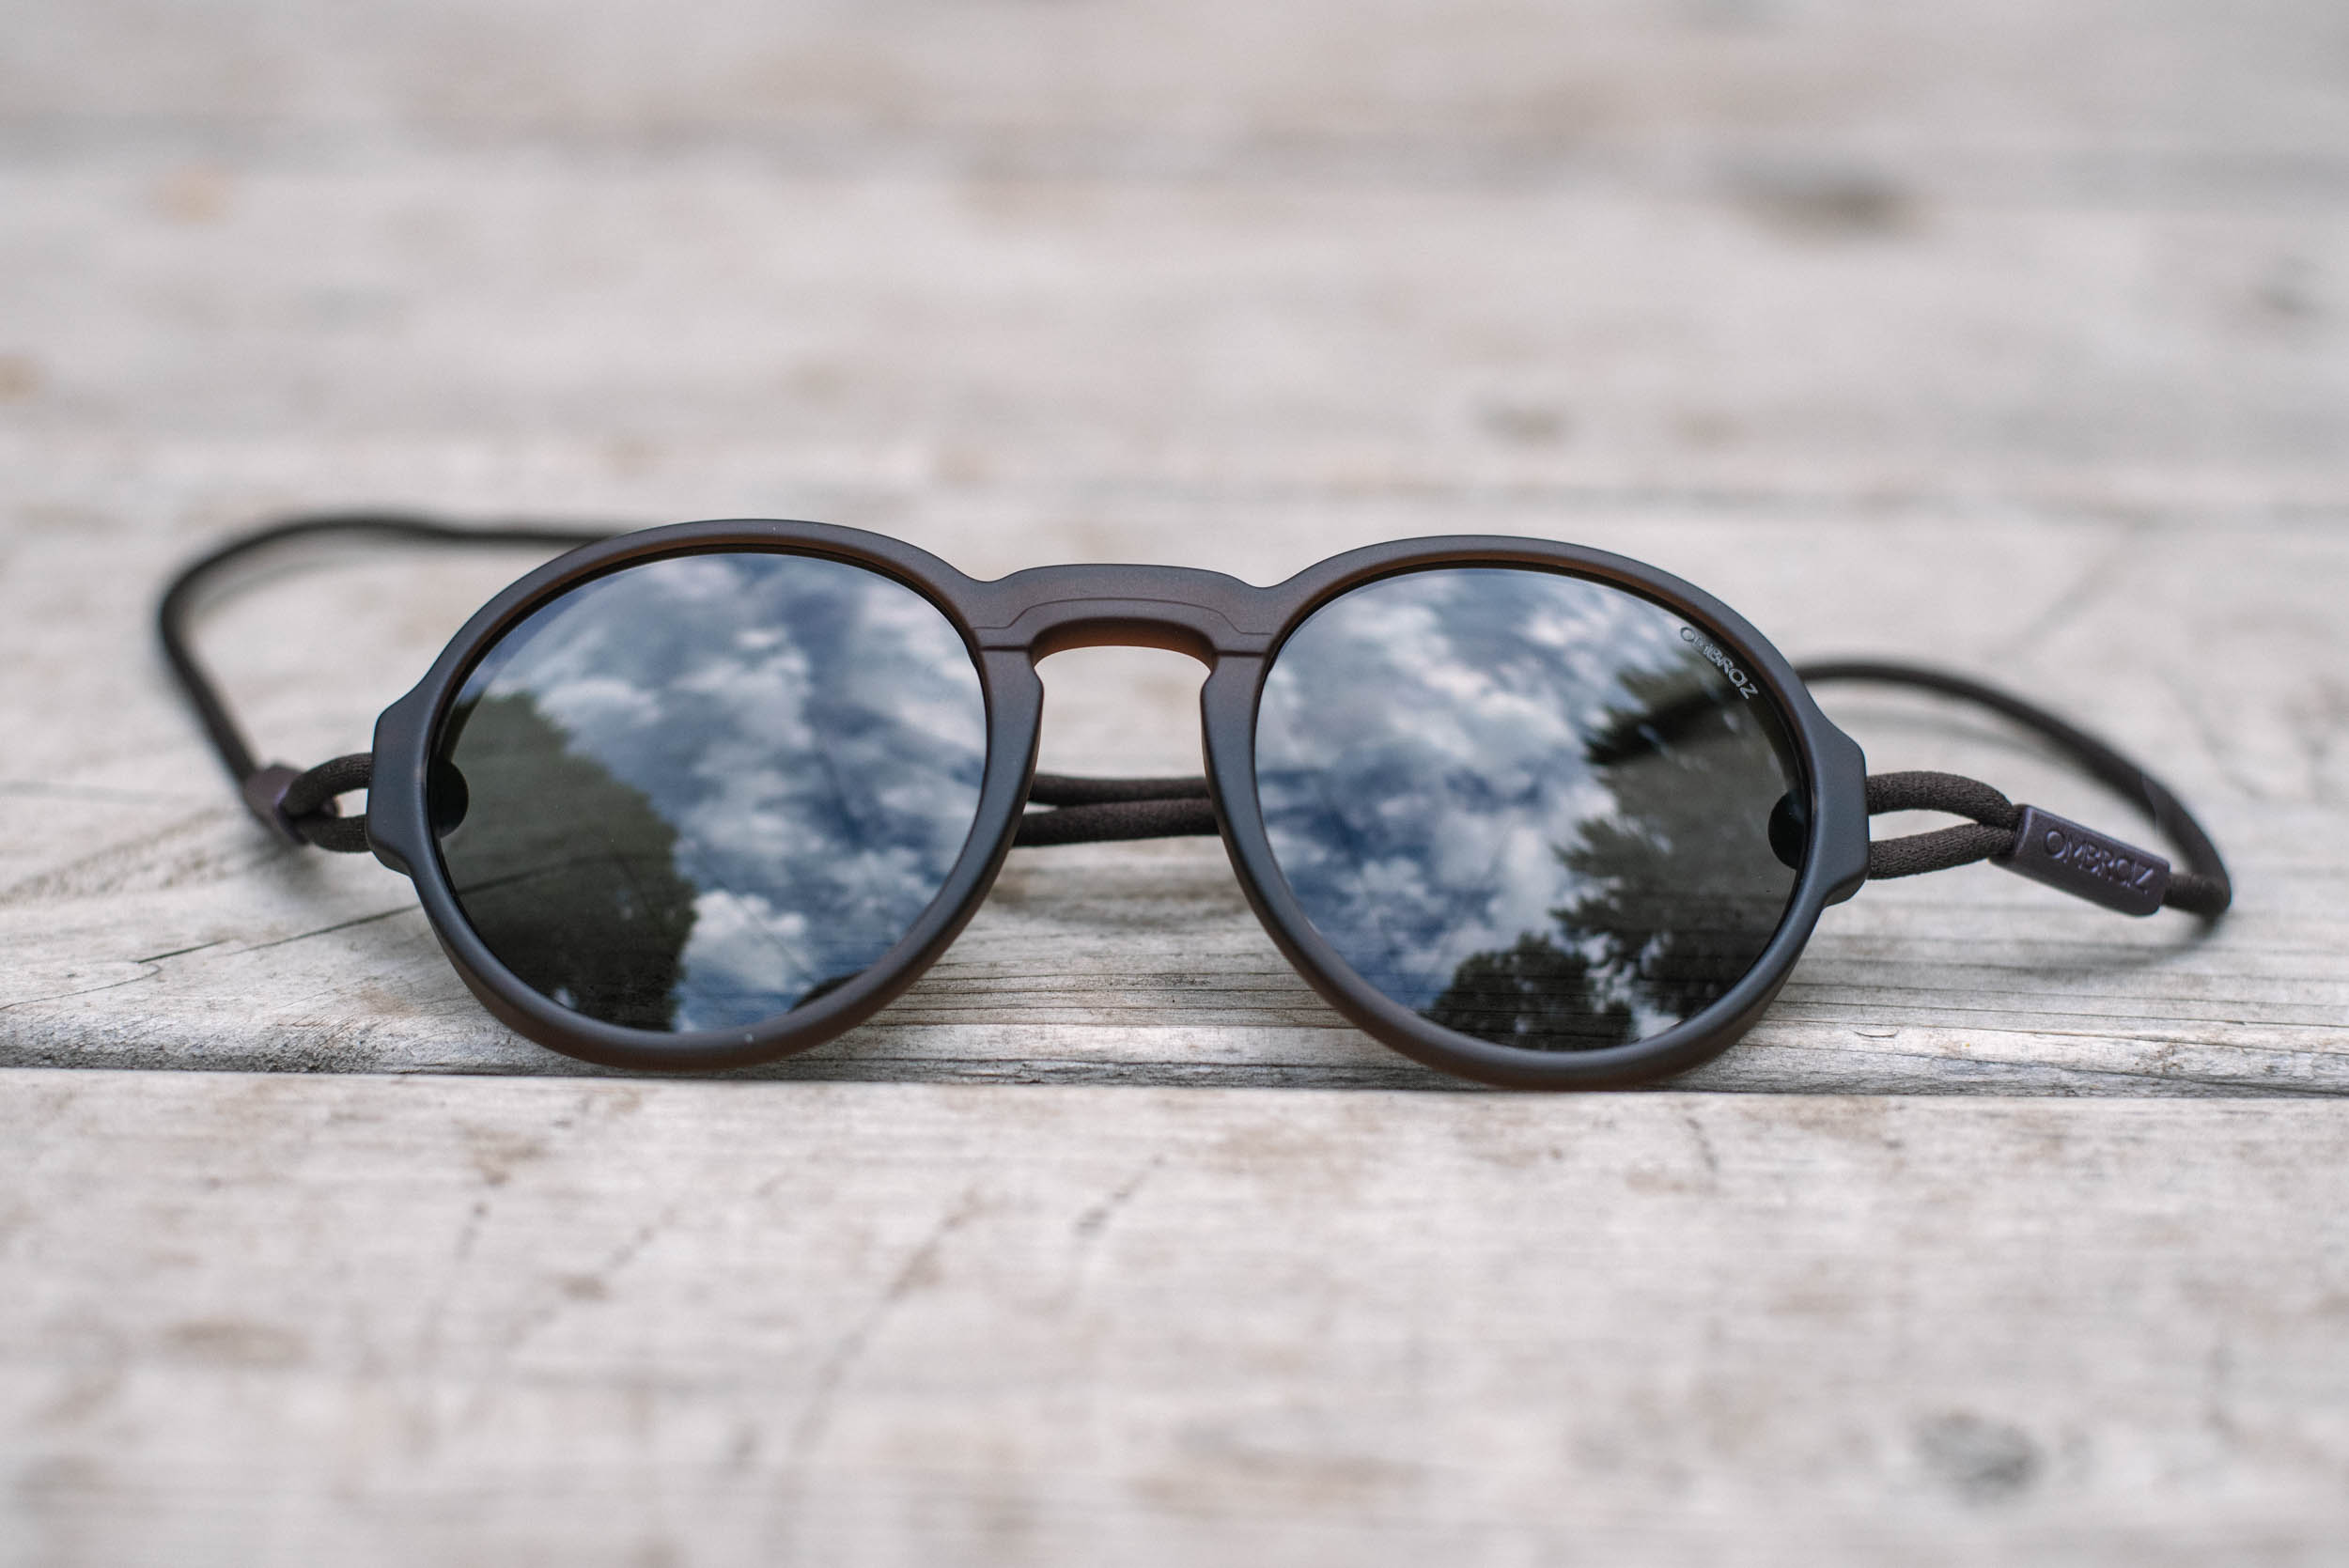 Collective Reward #124: Ombraz Teton and Viale Sunglasses